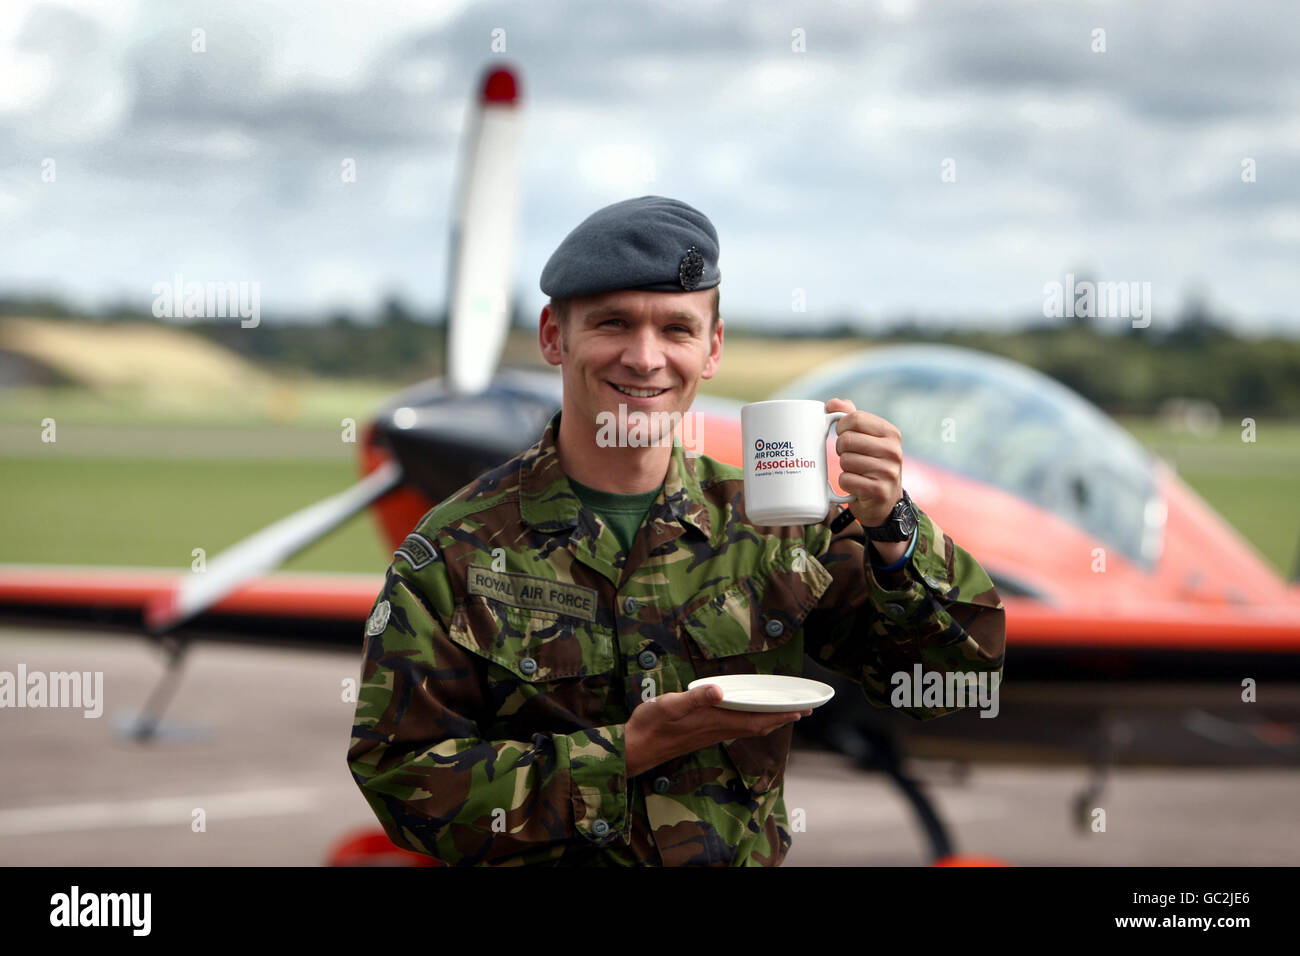 RAF-Militärangehöriger Corporal Stewart Hefti nach seinem Weltrekord von 14 Circuit Loop the Loop, während er eine Tasse Tee bei RAF Cosford trinkt. Der Rekord wurde im Rahmen der Spendenaktion „Brew for the few“ der RAF Association aufgestellt. Stockfoto